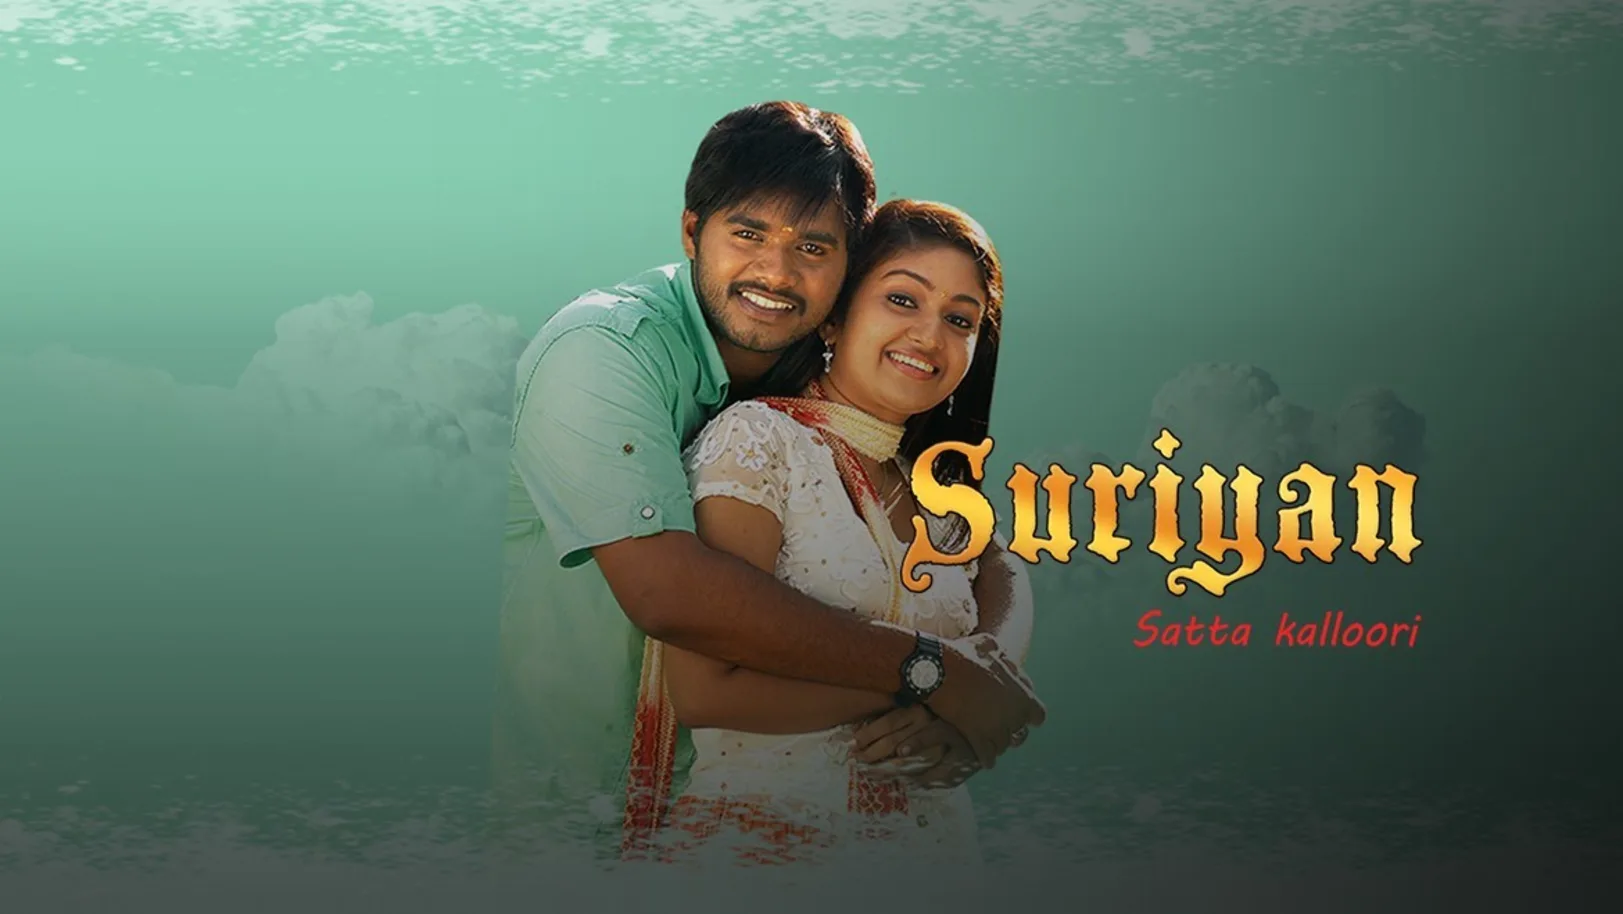 Suriyan Satta Kalloori Movie